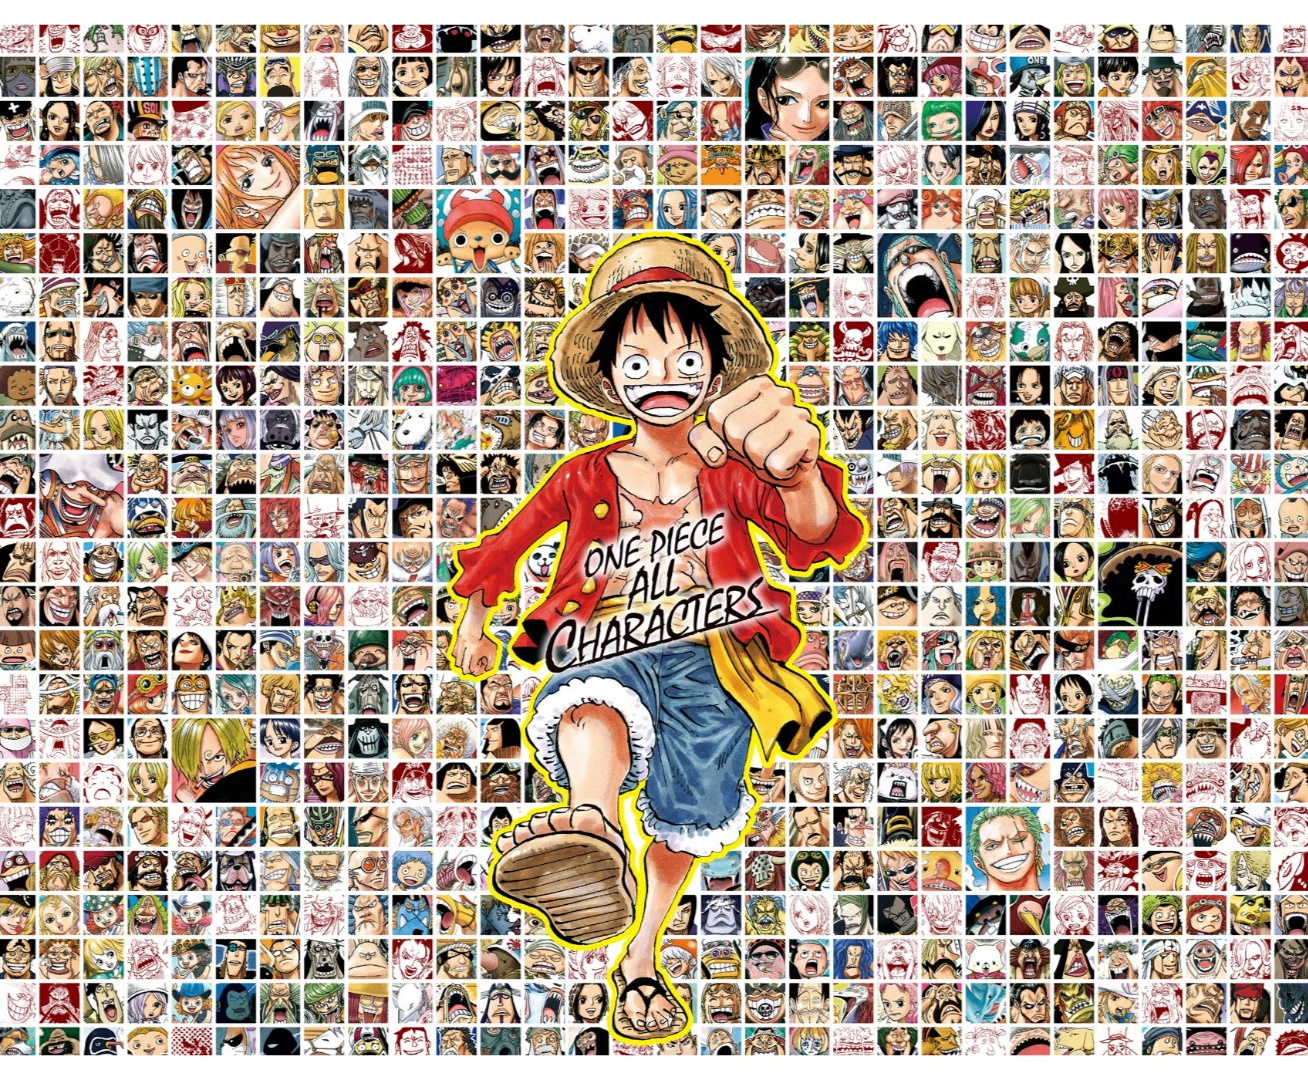 One Piece ワンピース の登場人物 キャラクターのプロフィールまとめ 5 5 Renote リノート